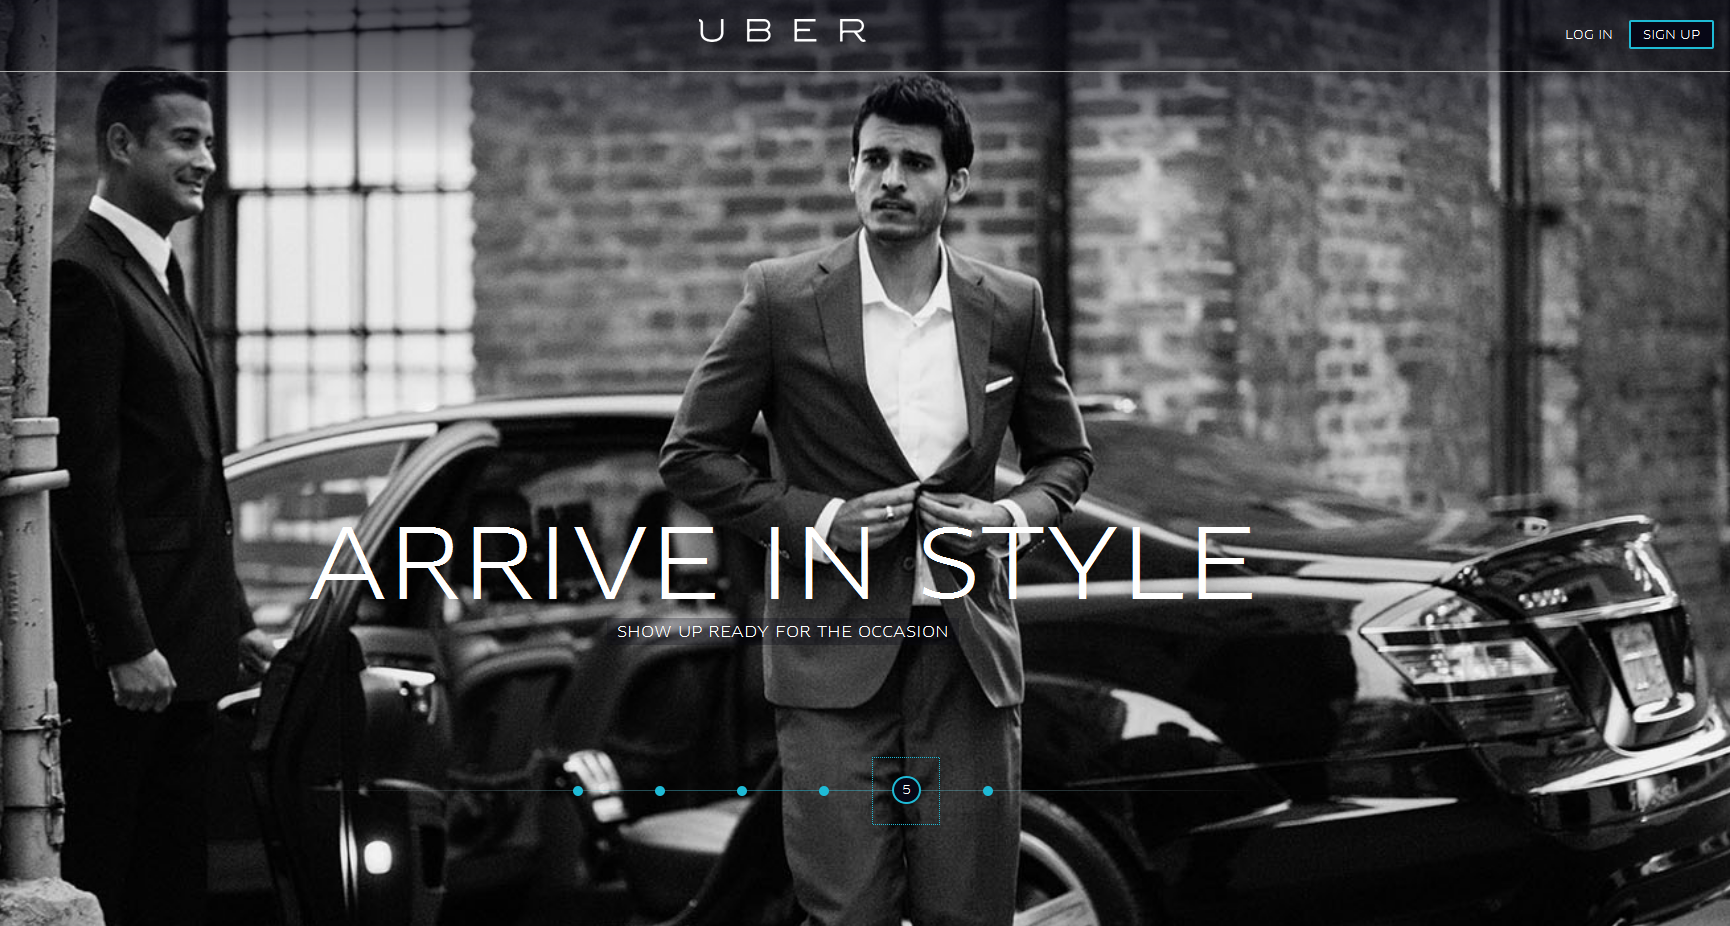 Hype um Uber: Google Ventures schießt eine Viertel Milliarde Dollar in Limousinen-StartUp